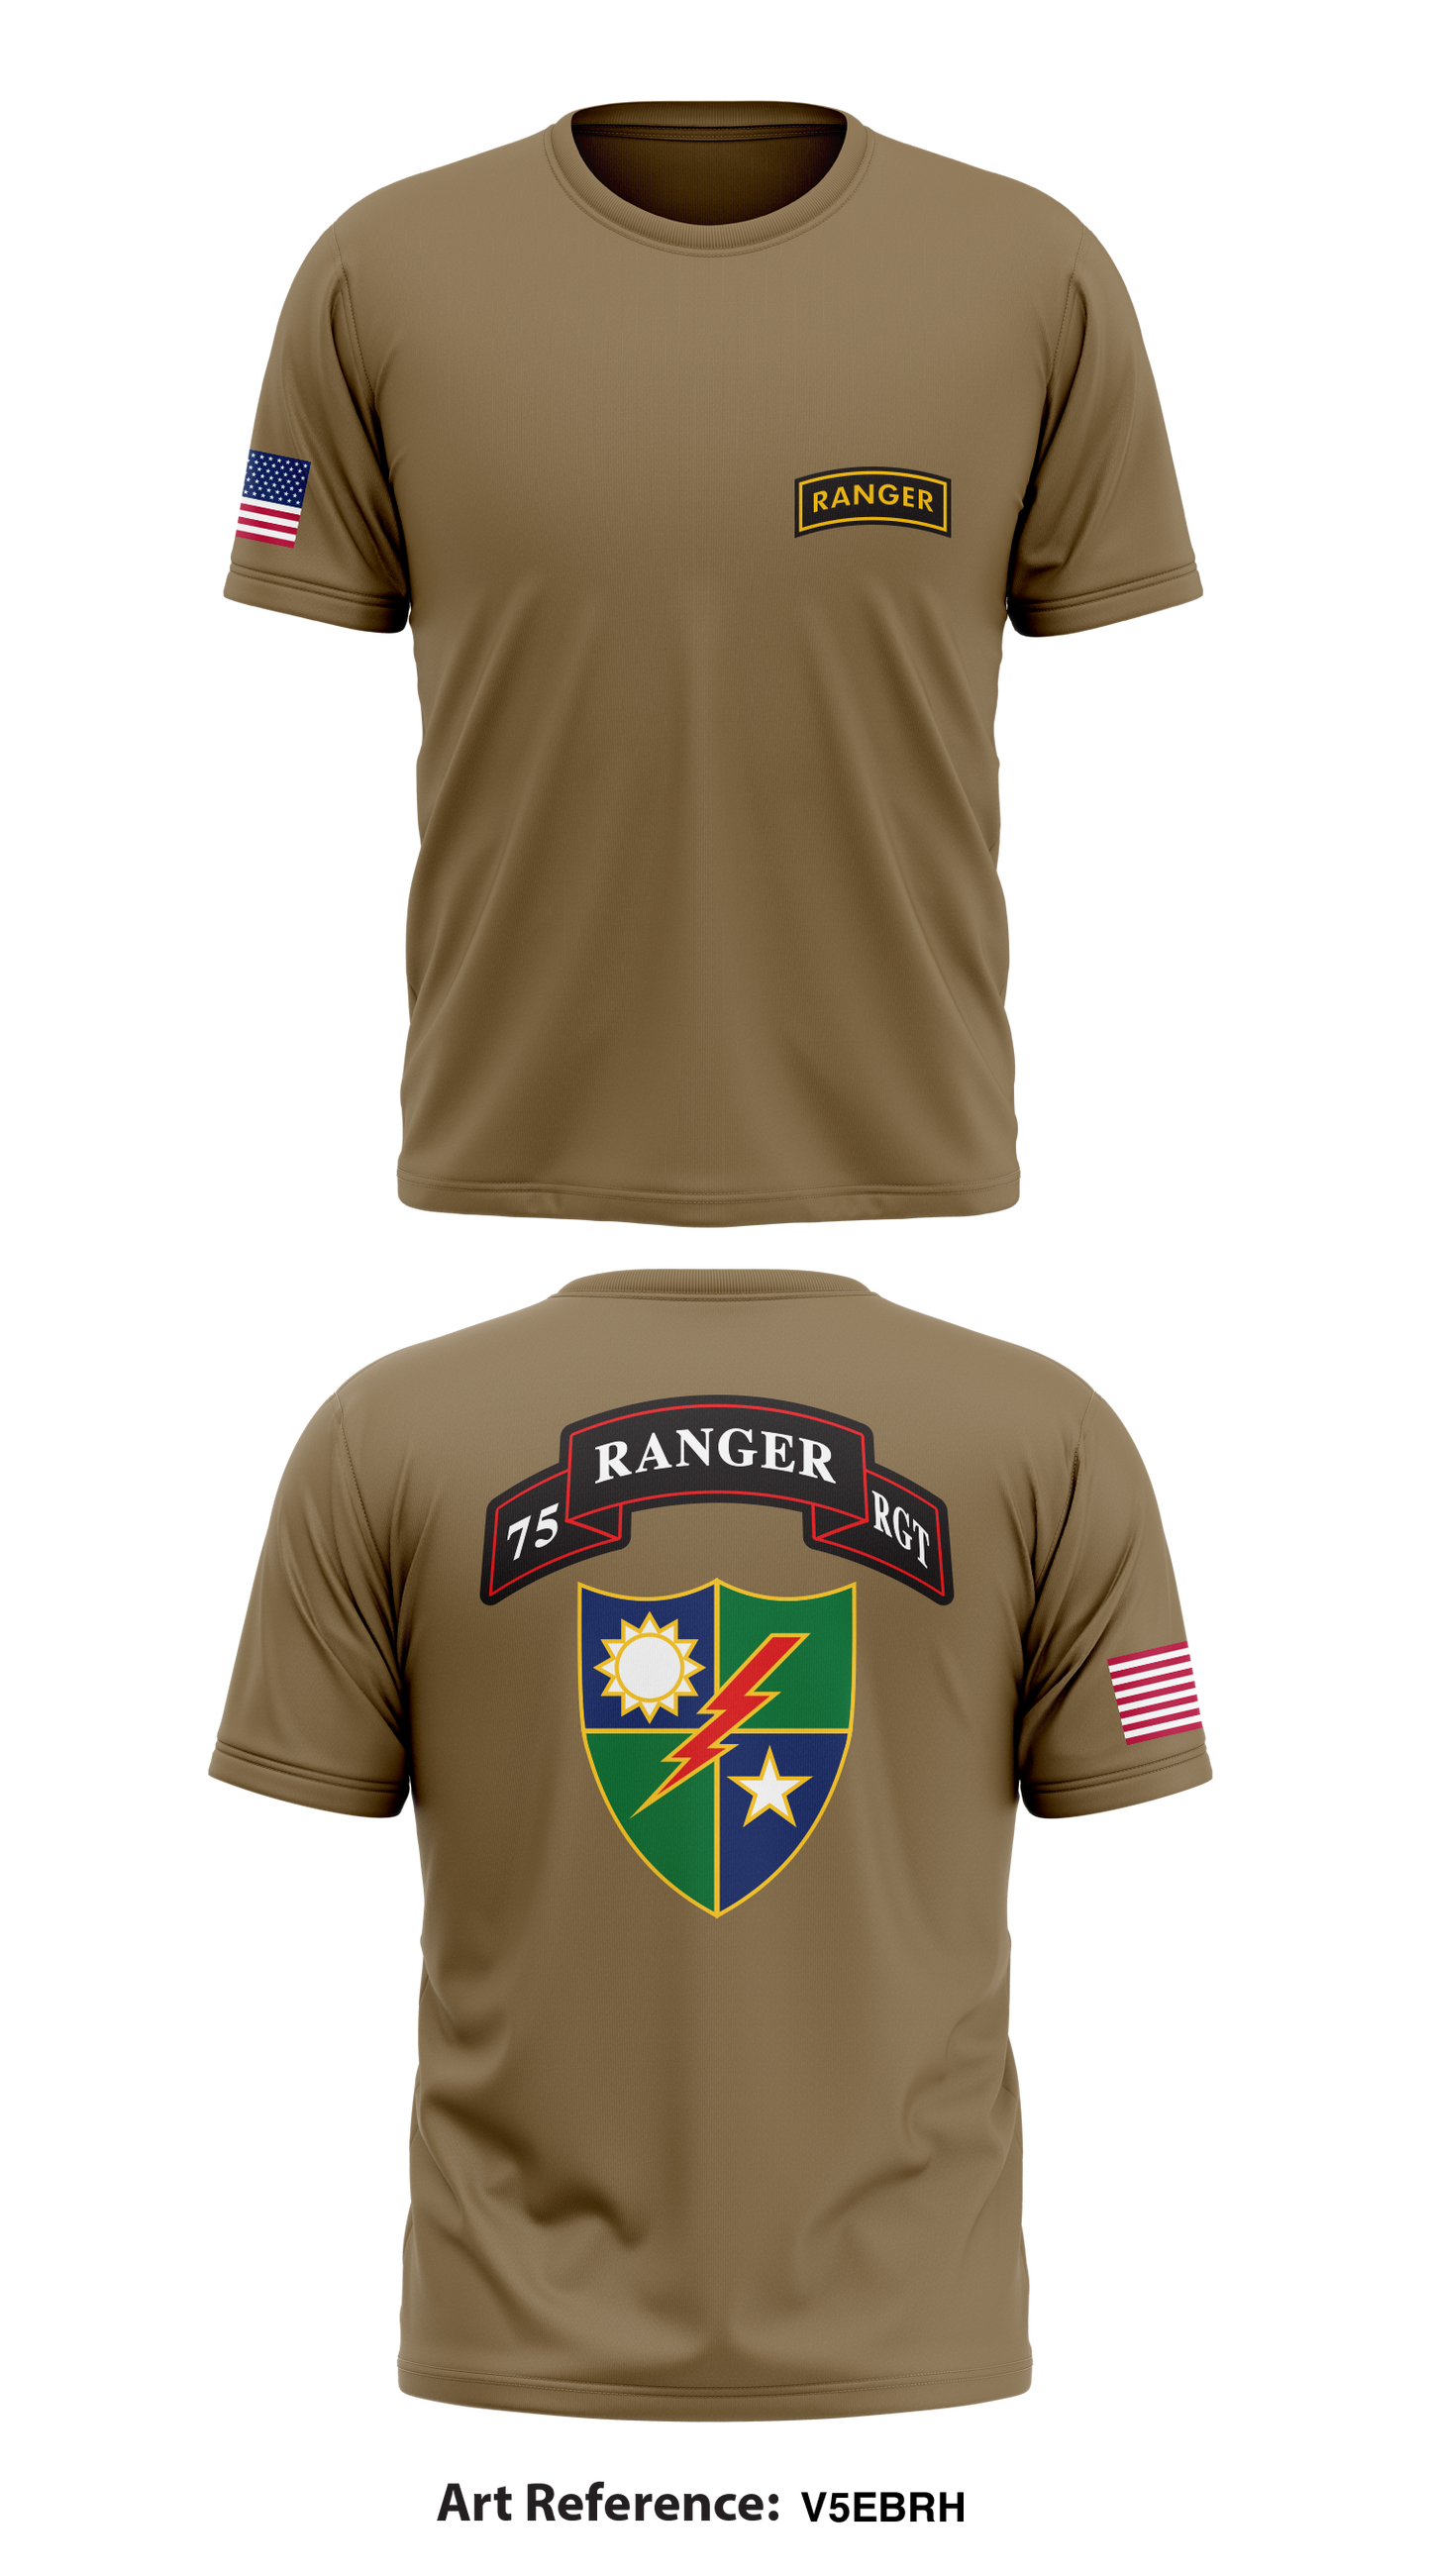 75 Ranger Regiment Store 1 Core Men's SS Performance Tee - V5Ebrh